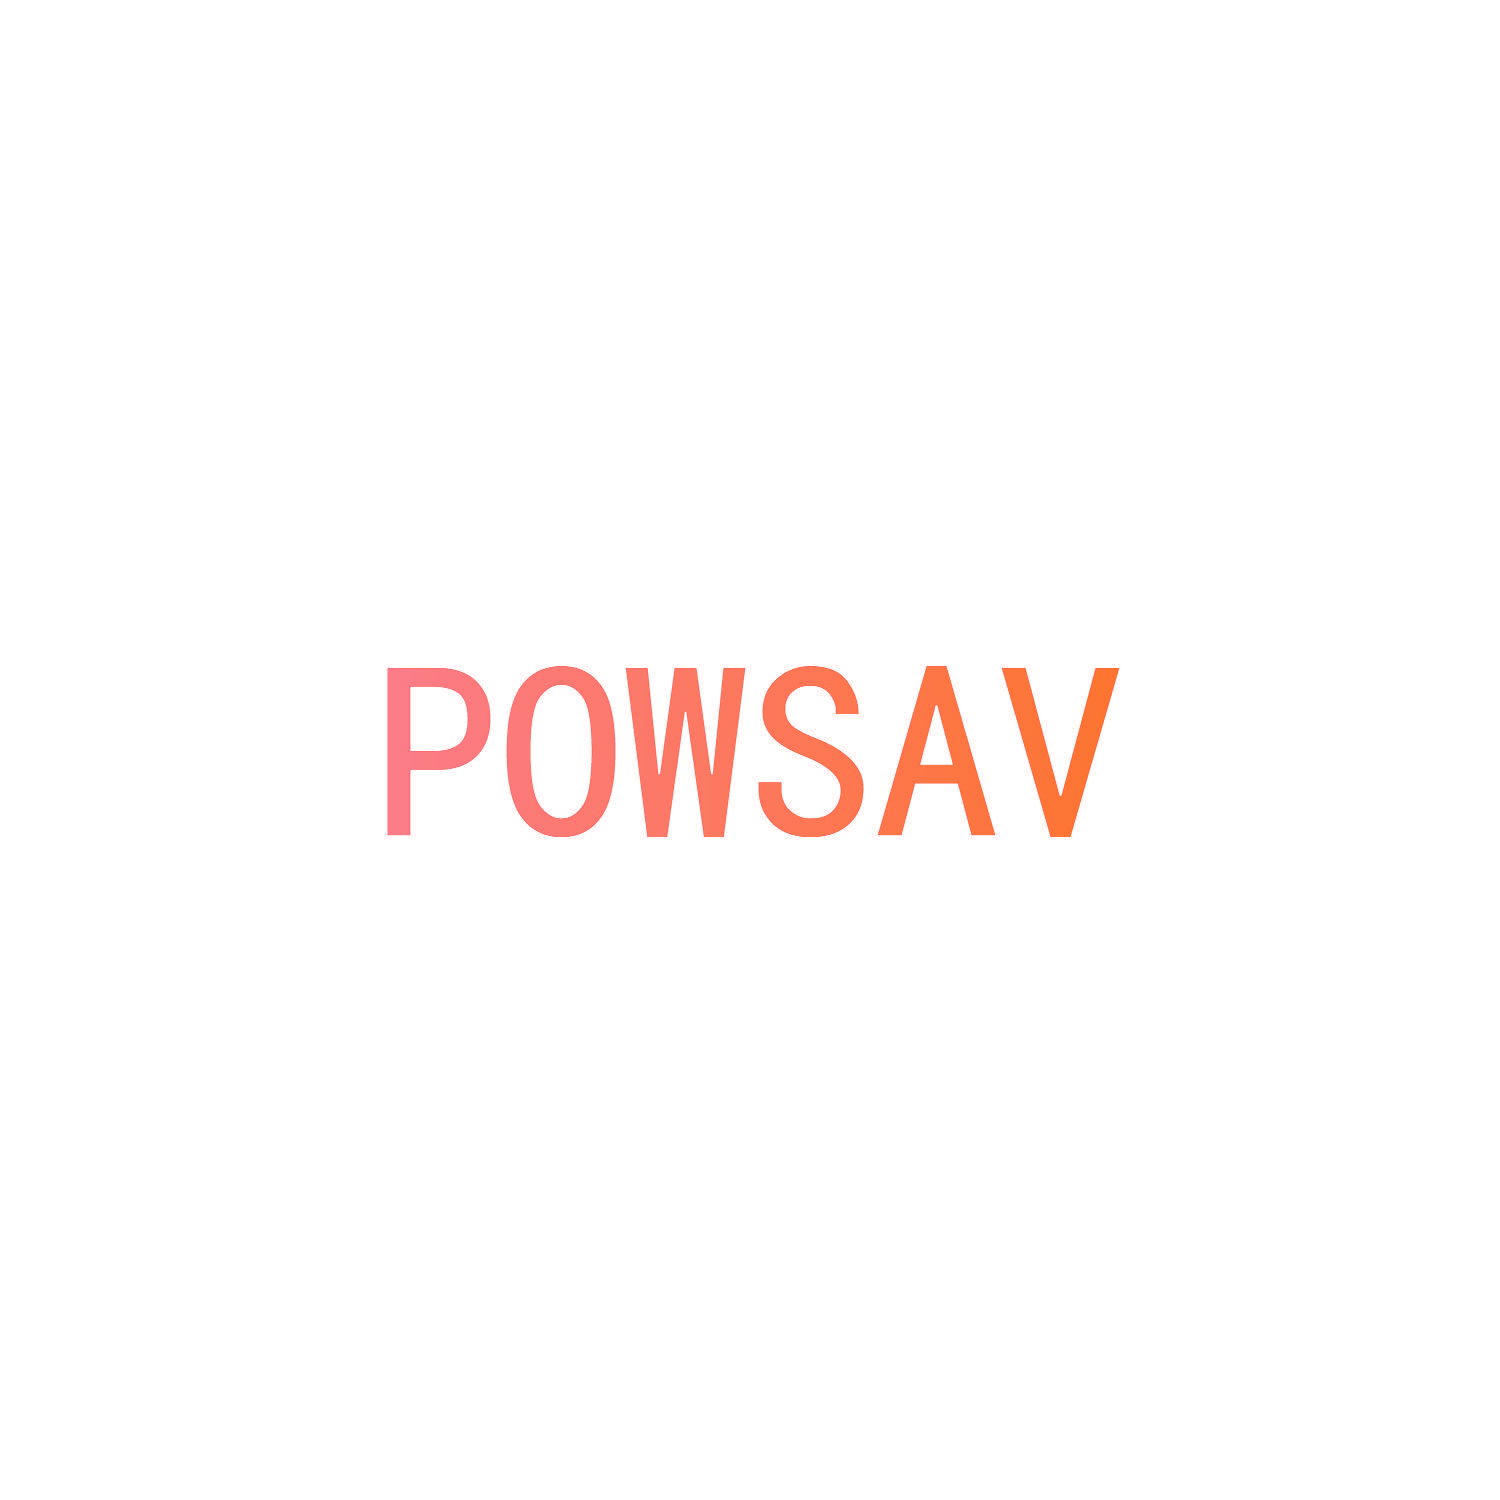 POWSAV